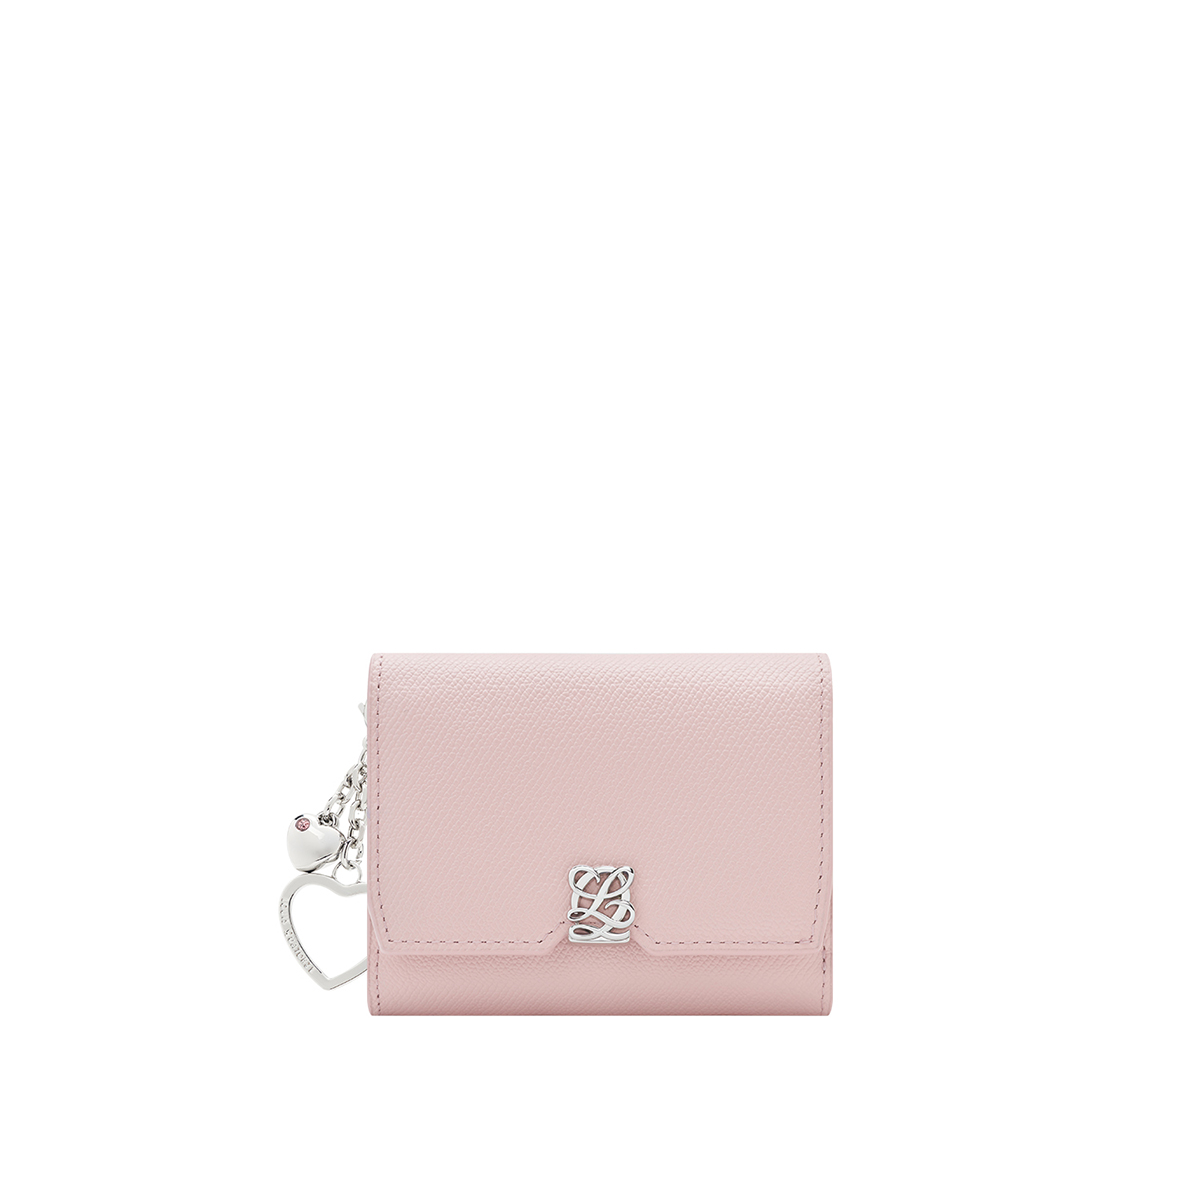 [공식몰단독] 루이까또즈 LALA(라라) 여성반지갑 핑크 SS2SD71PI